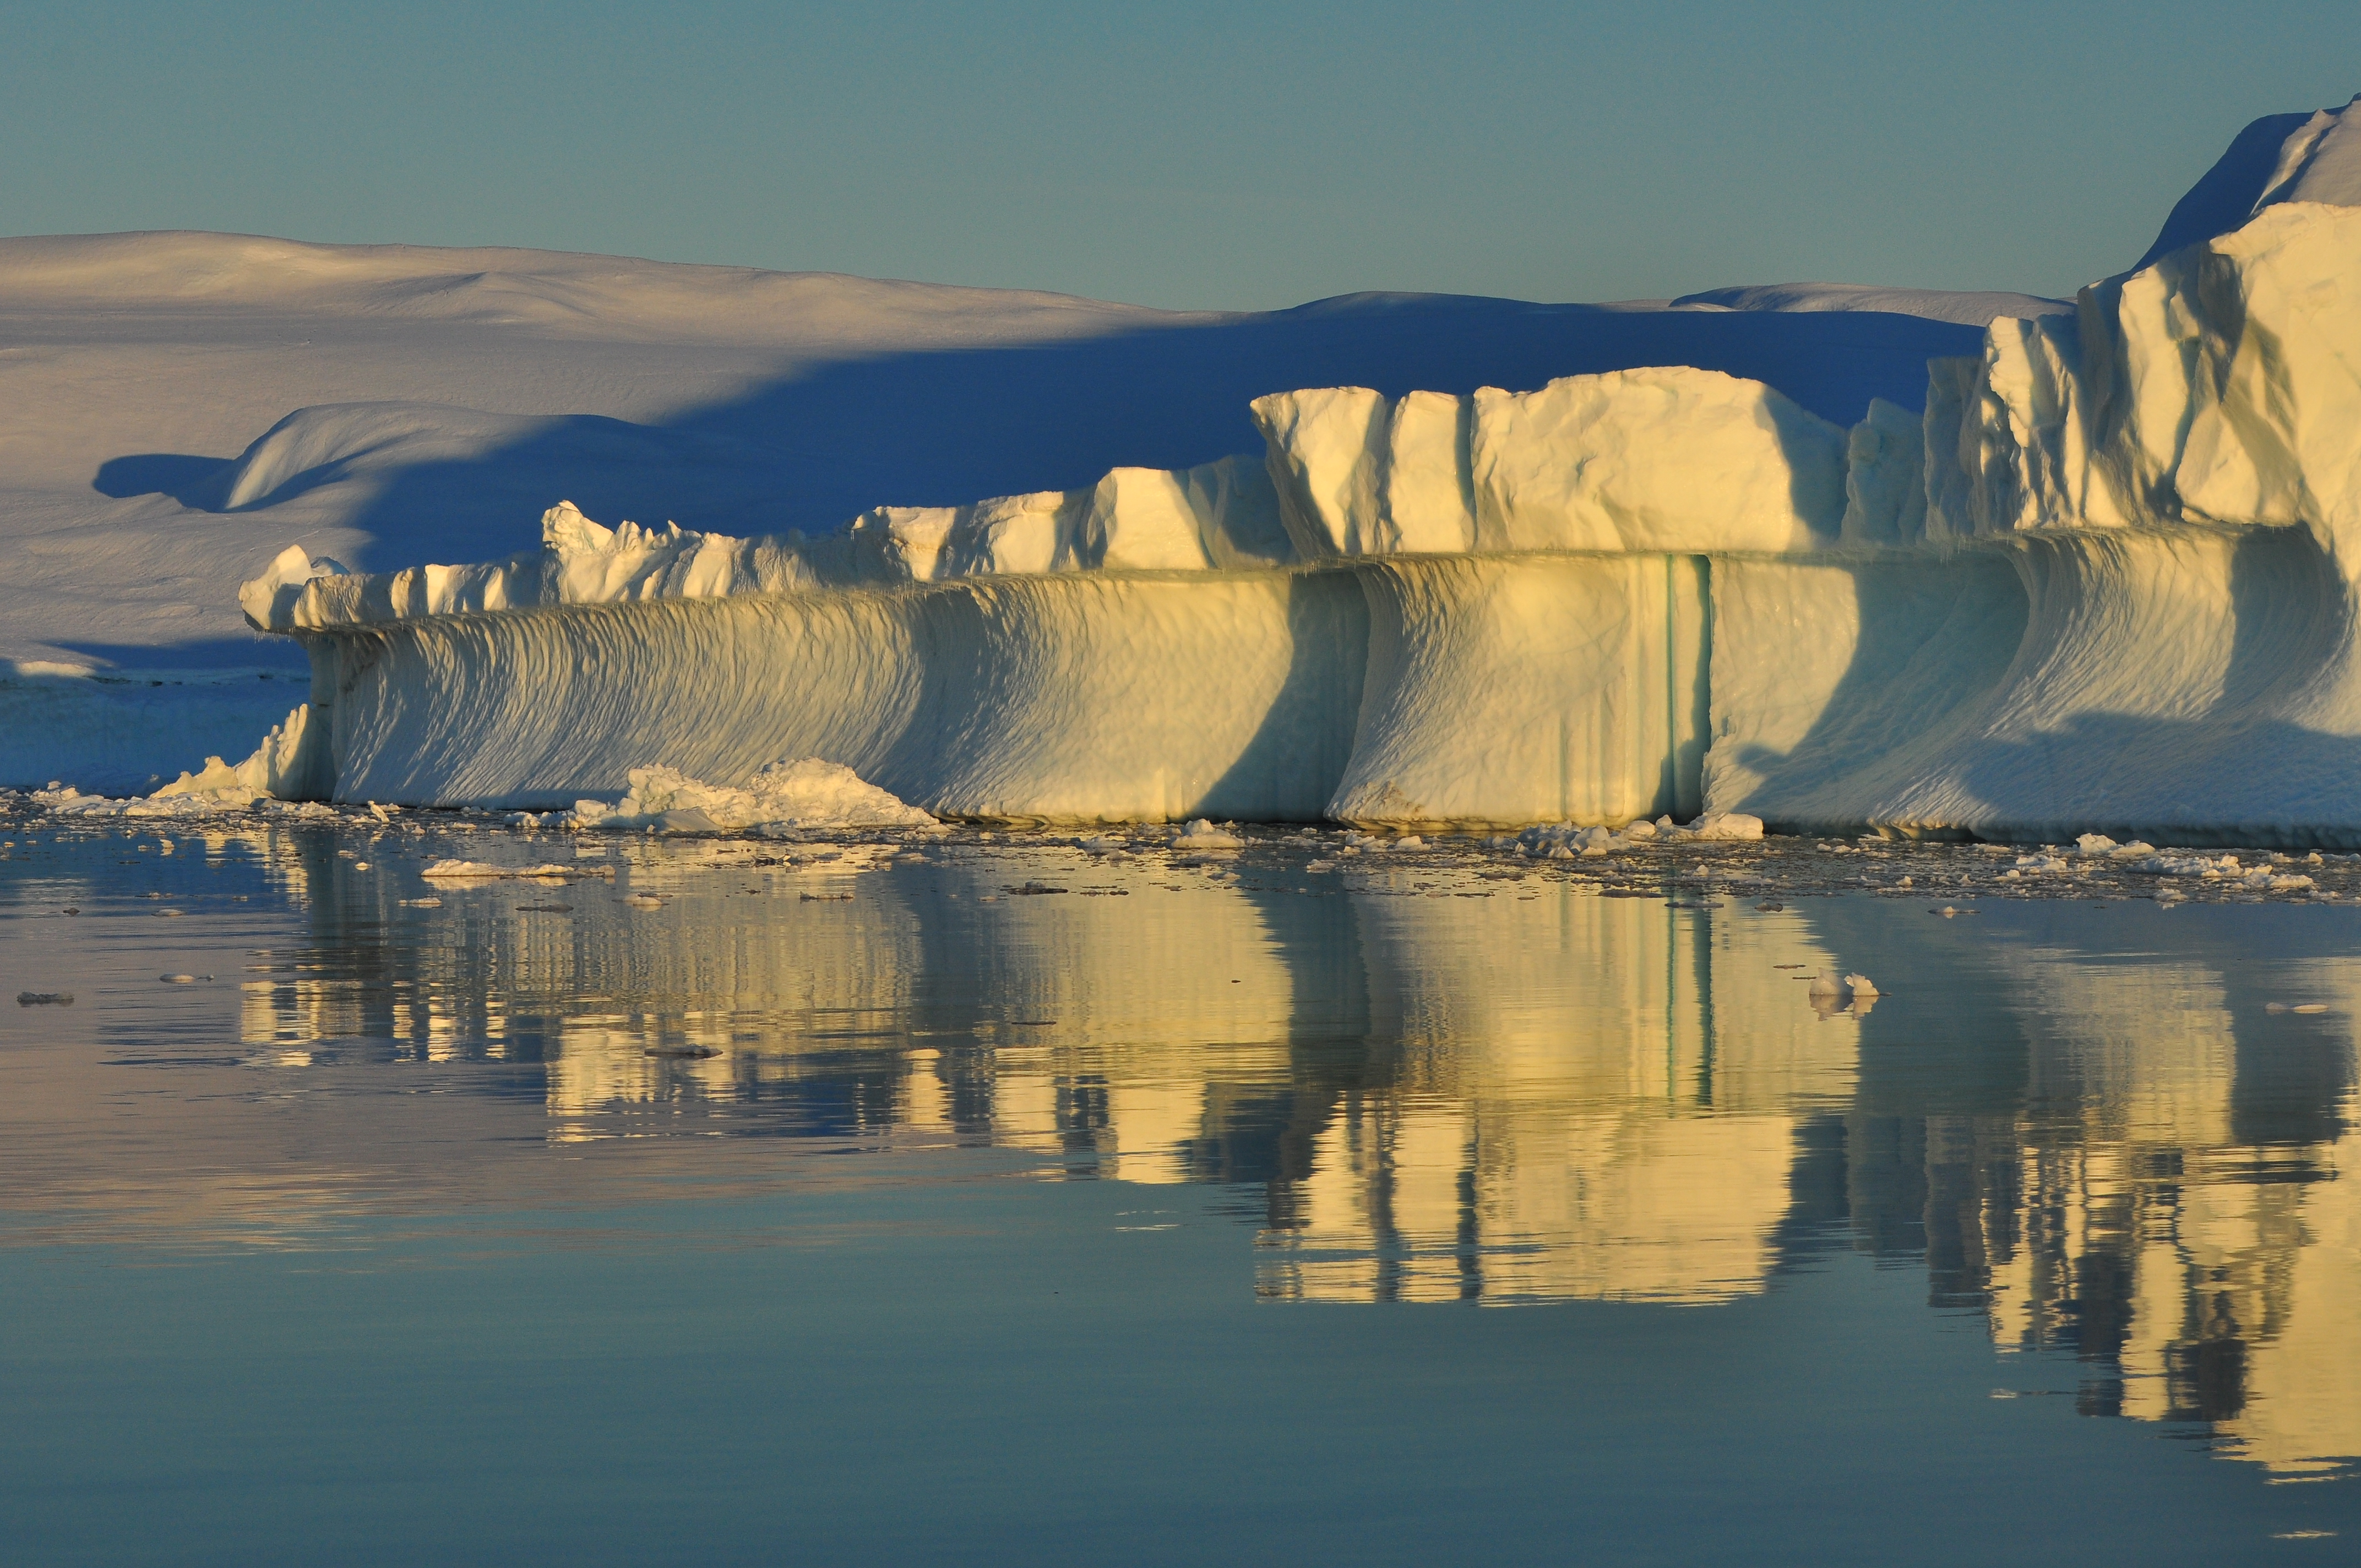 Billede af isbjerge ved kysten